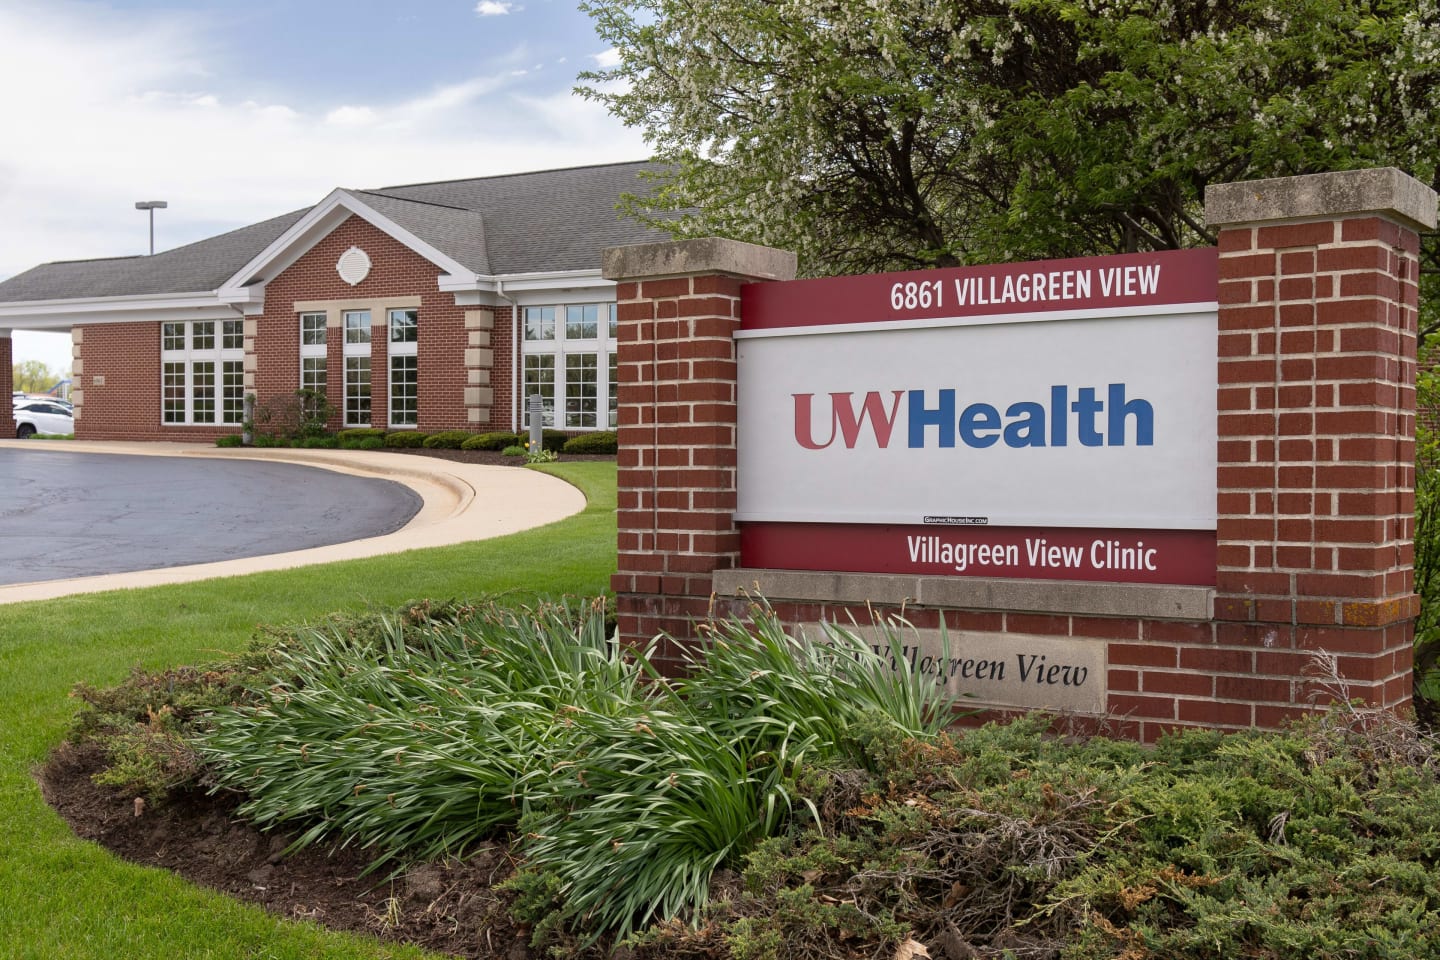 Exterior of UW Health Villagreen View Clinic